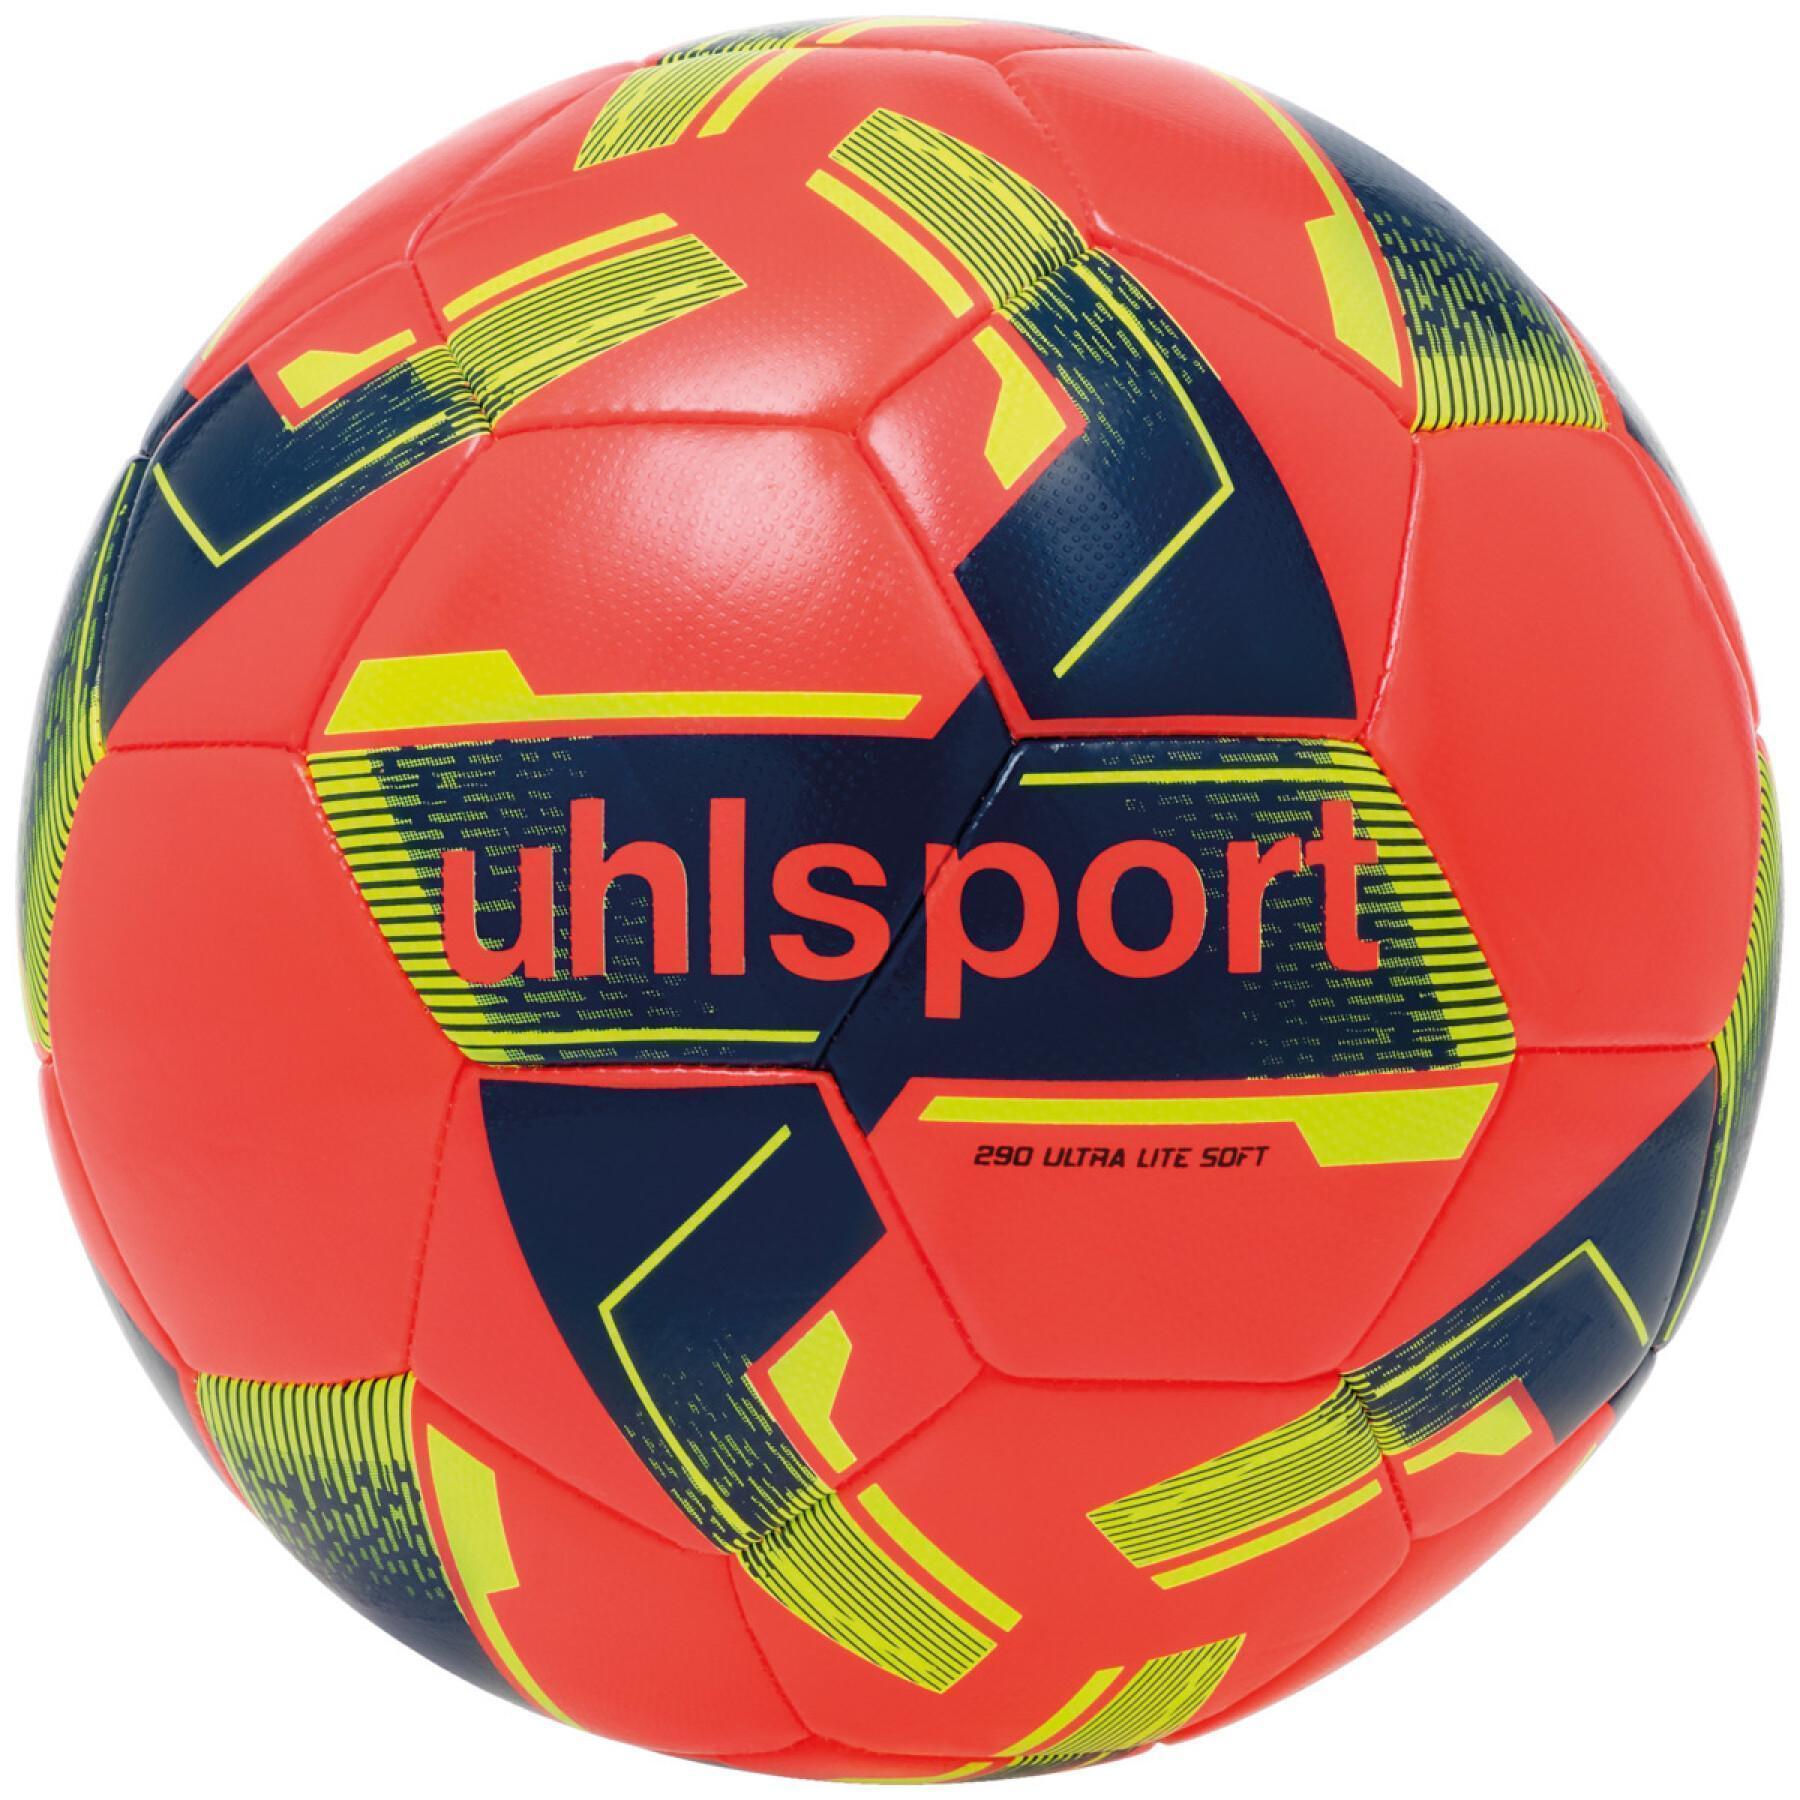 Barnens bal Uhlsport Ultra Lite Soft 290